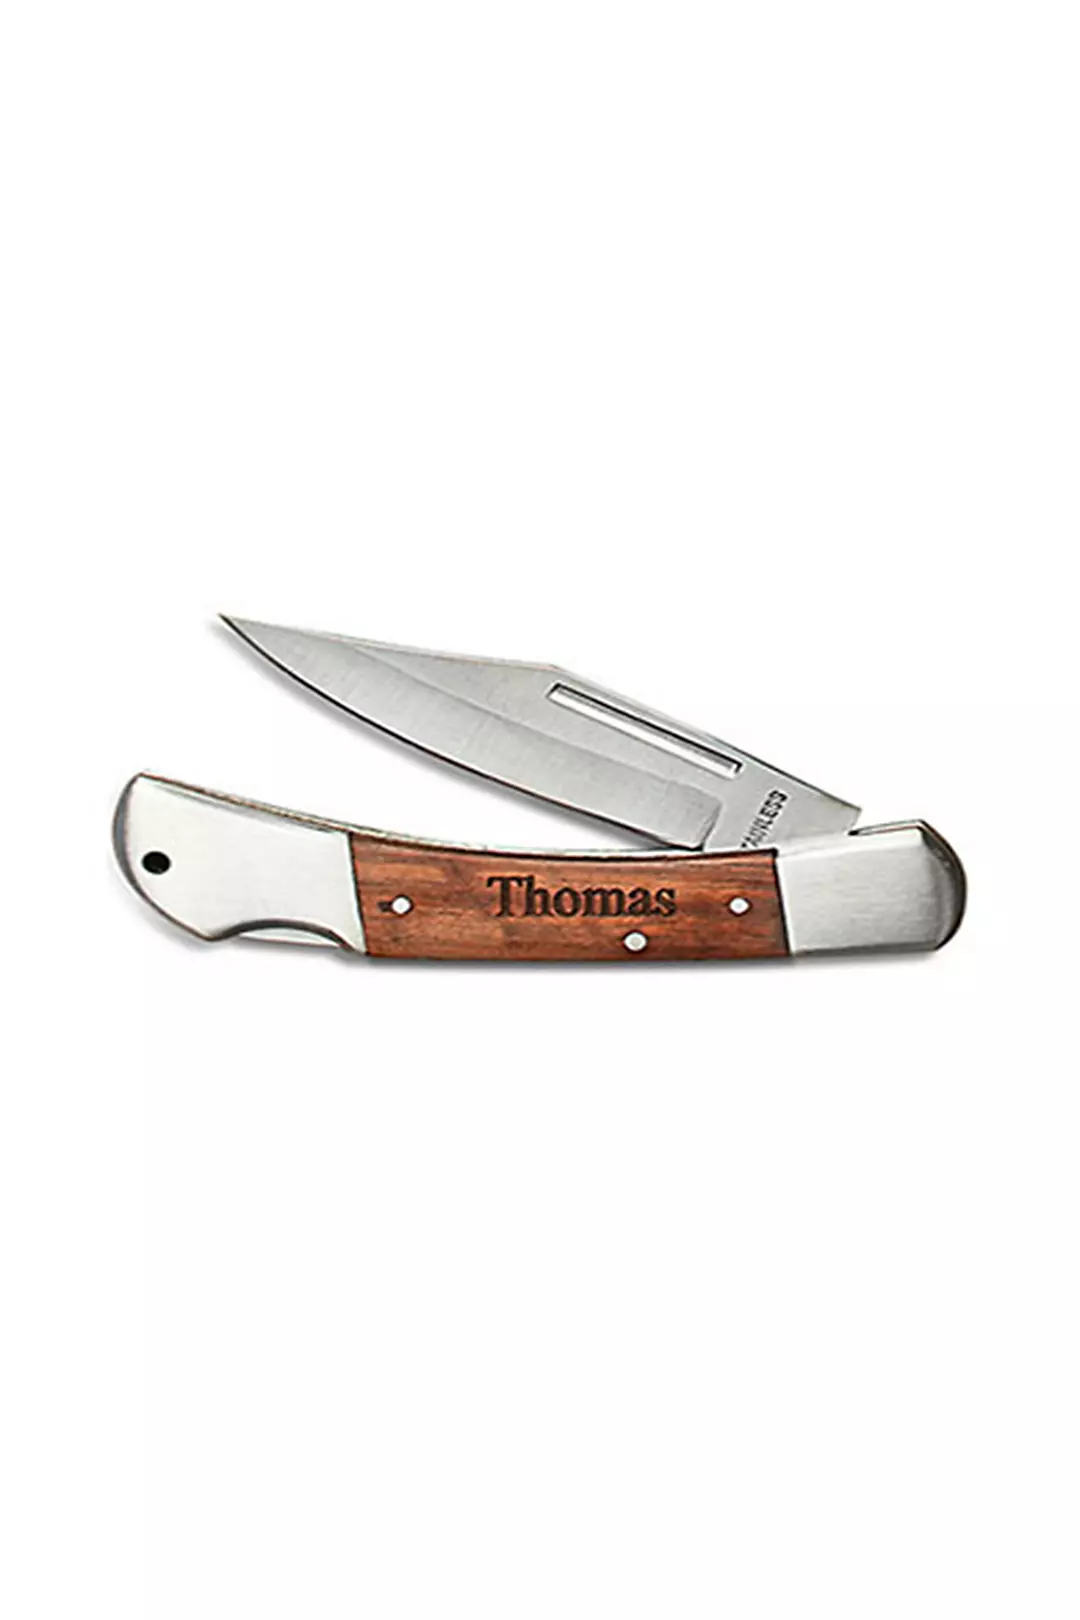 Personalized Wood Locking Pocket Knife Image